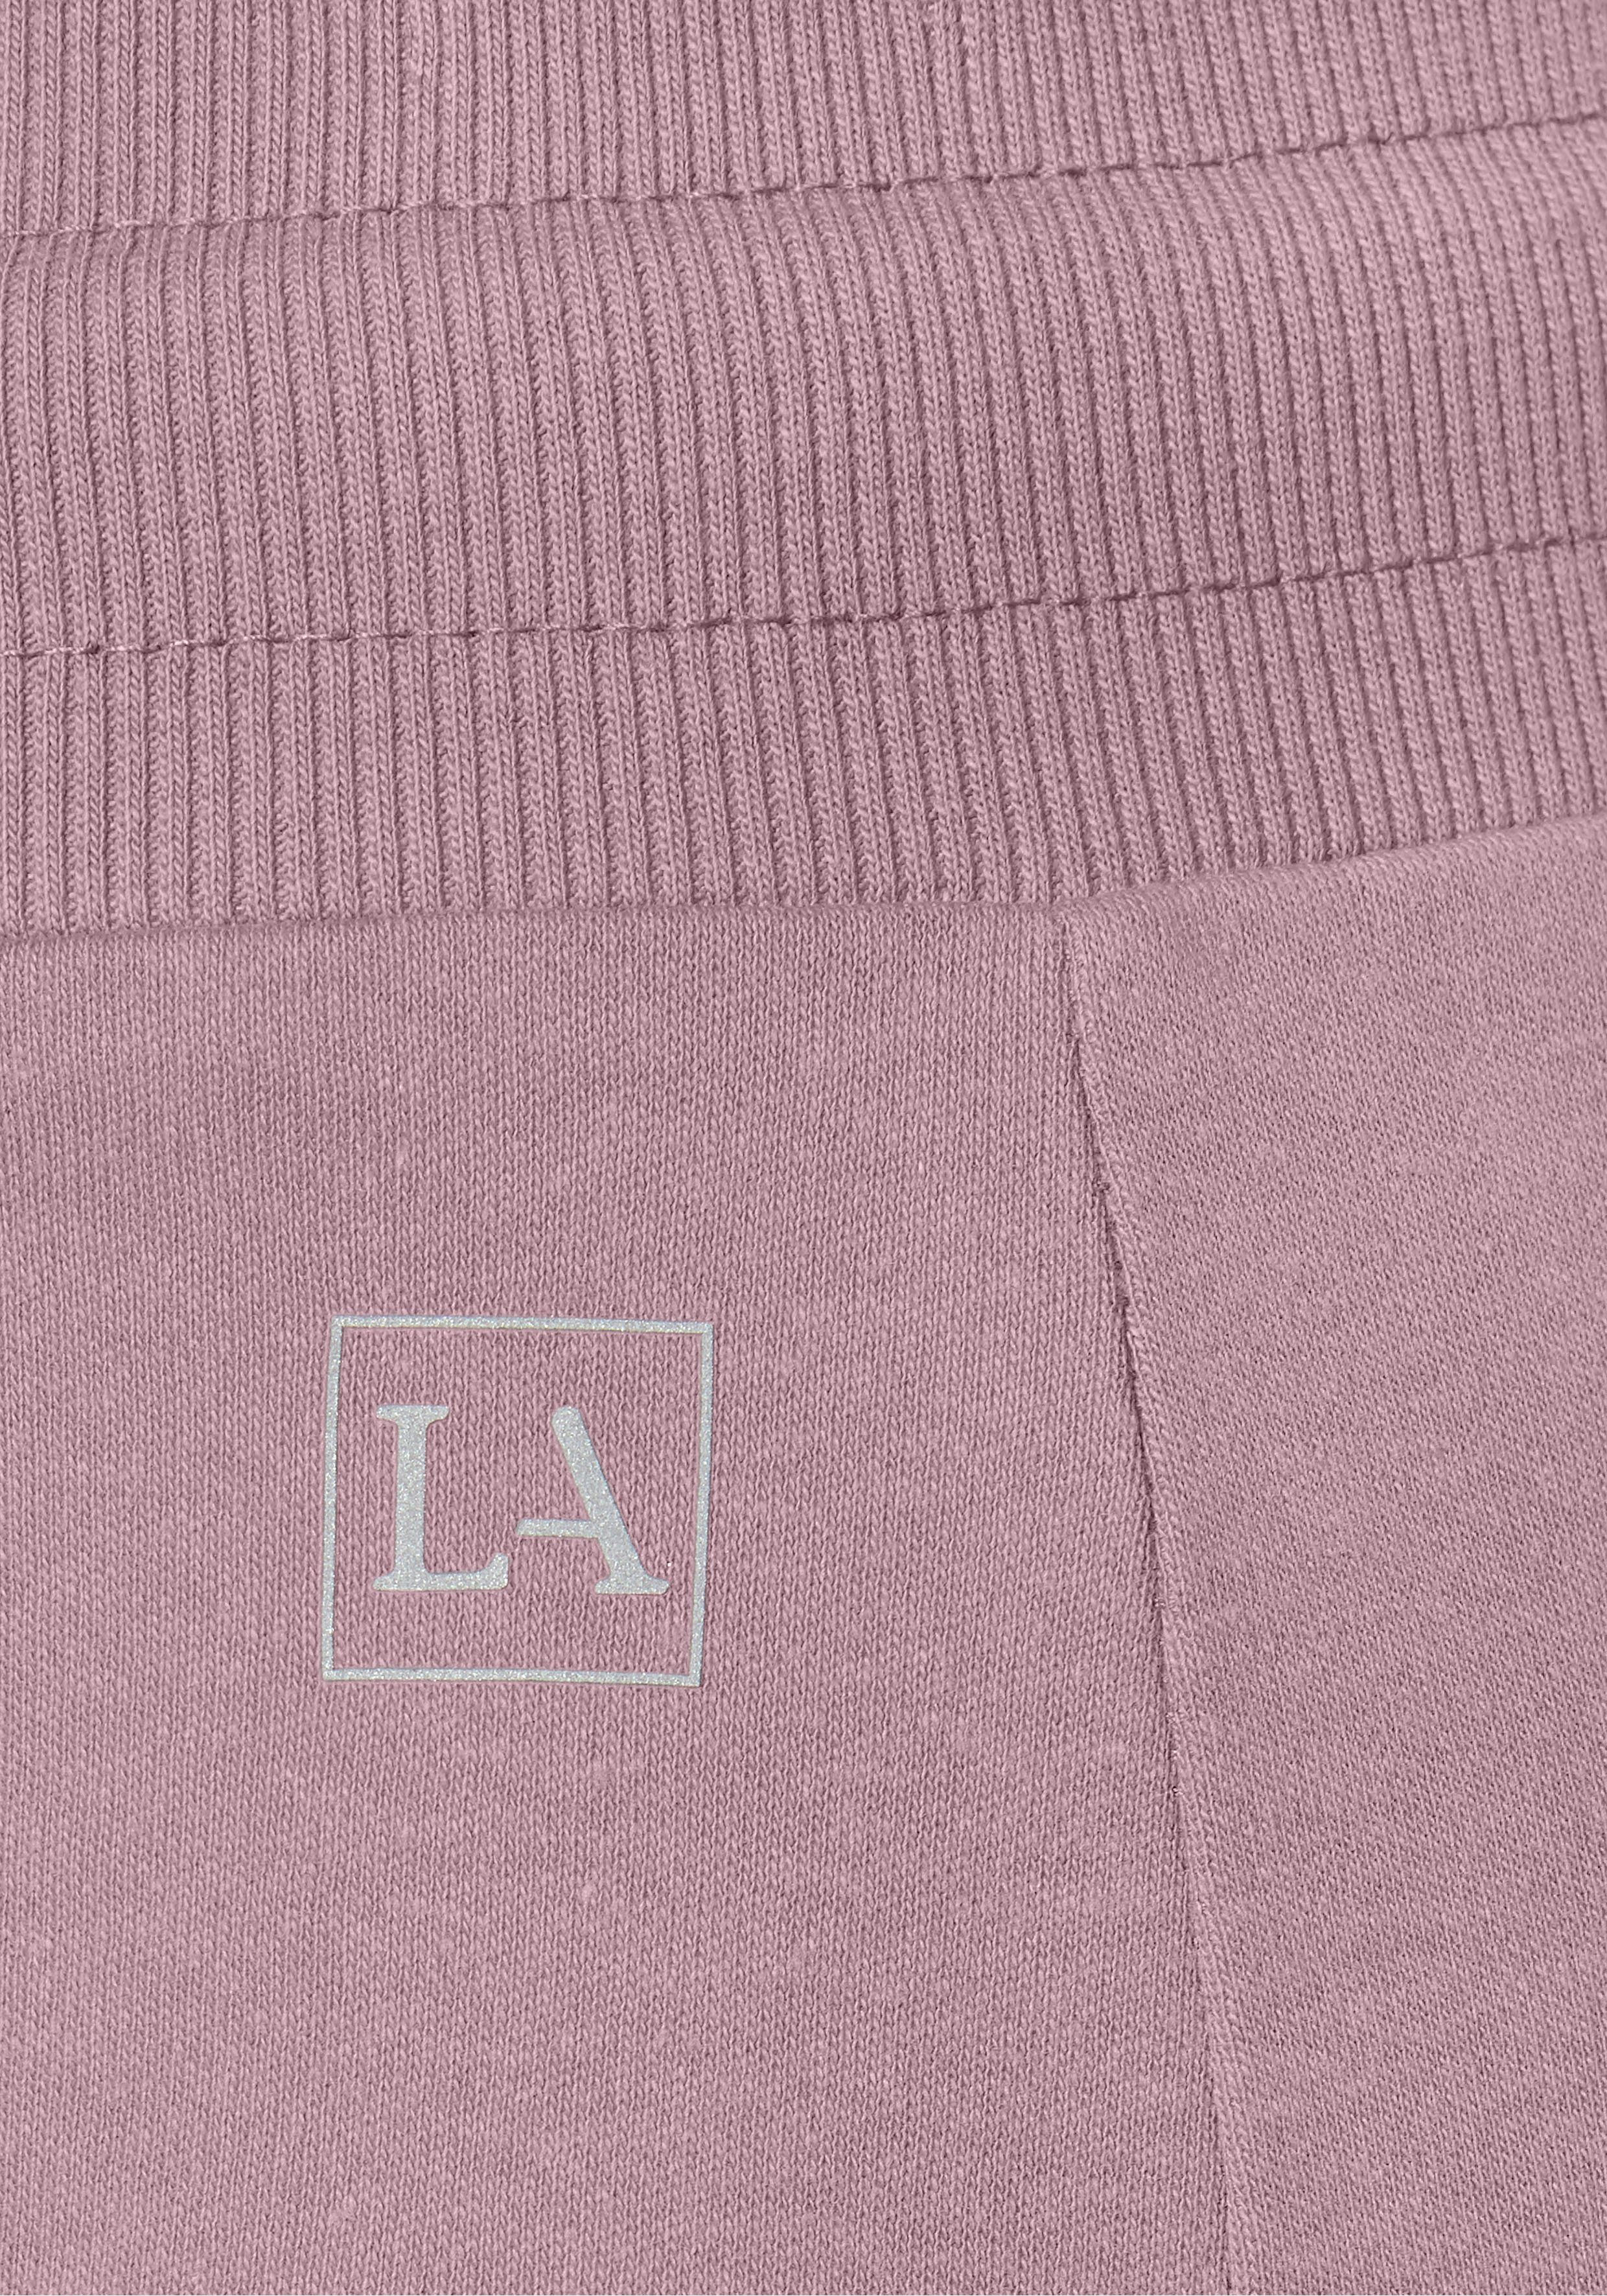 LASCANA ACTIVE kleinen rosa Shorts mit Seitenschlitzen